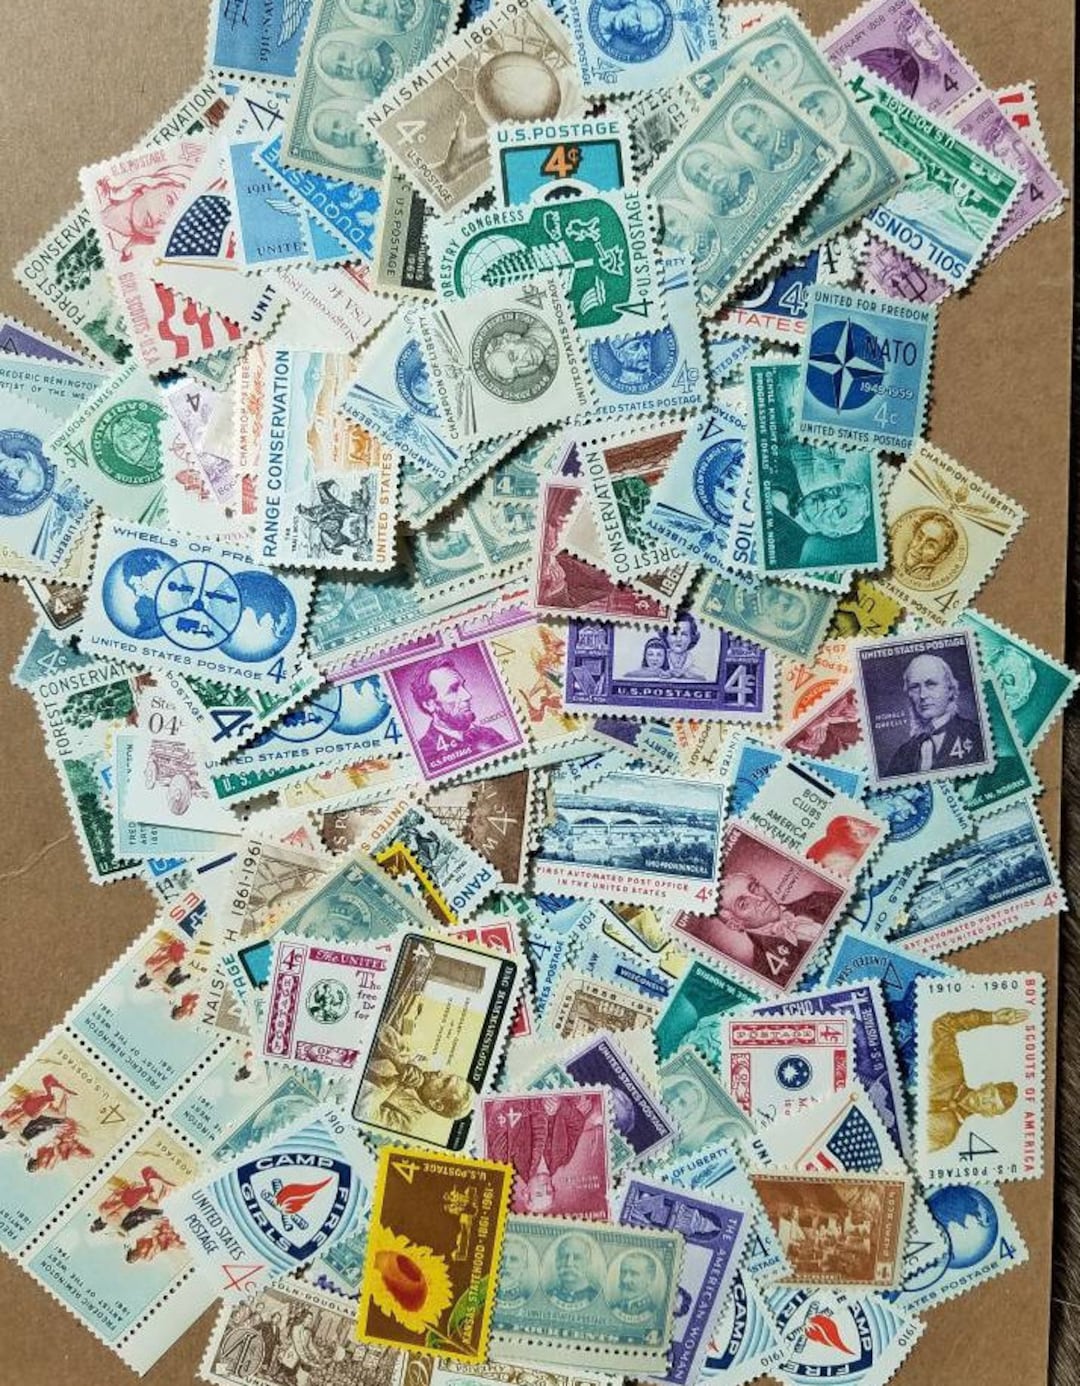 Louisiana Statehood 4c Unused Vintage 1962 Postage Stamps for 